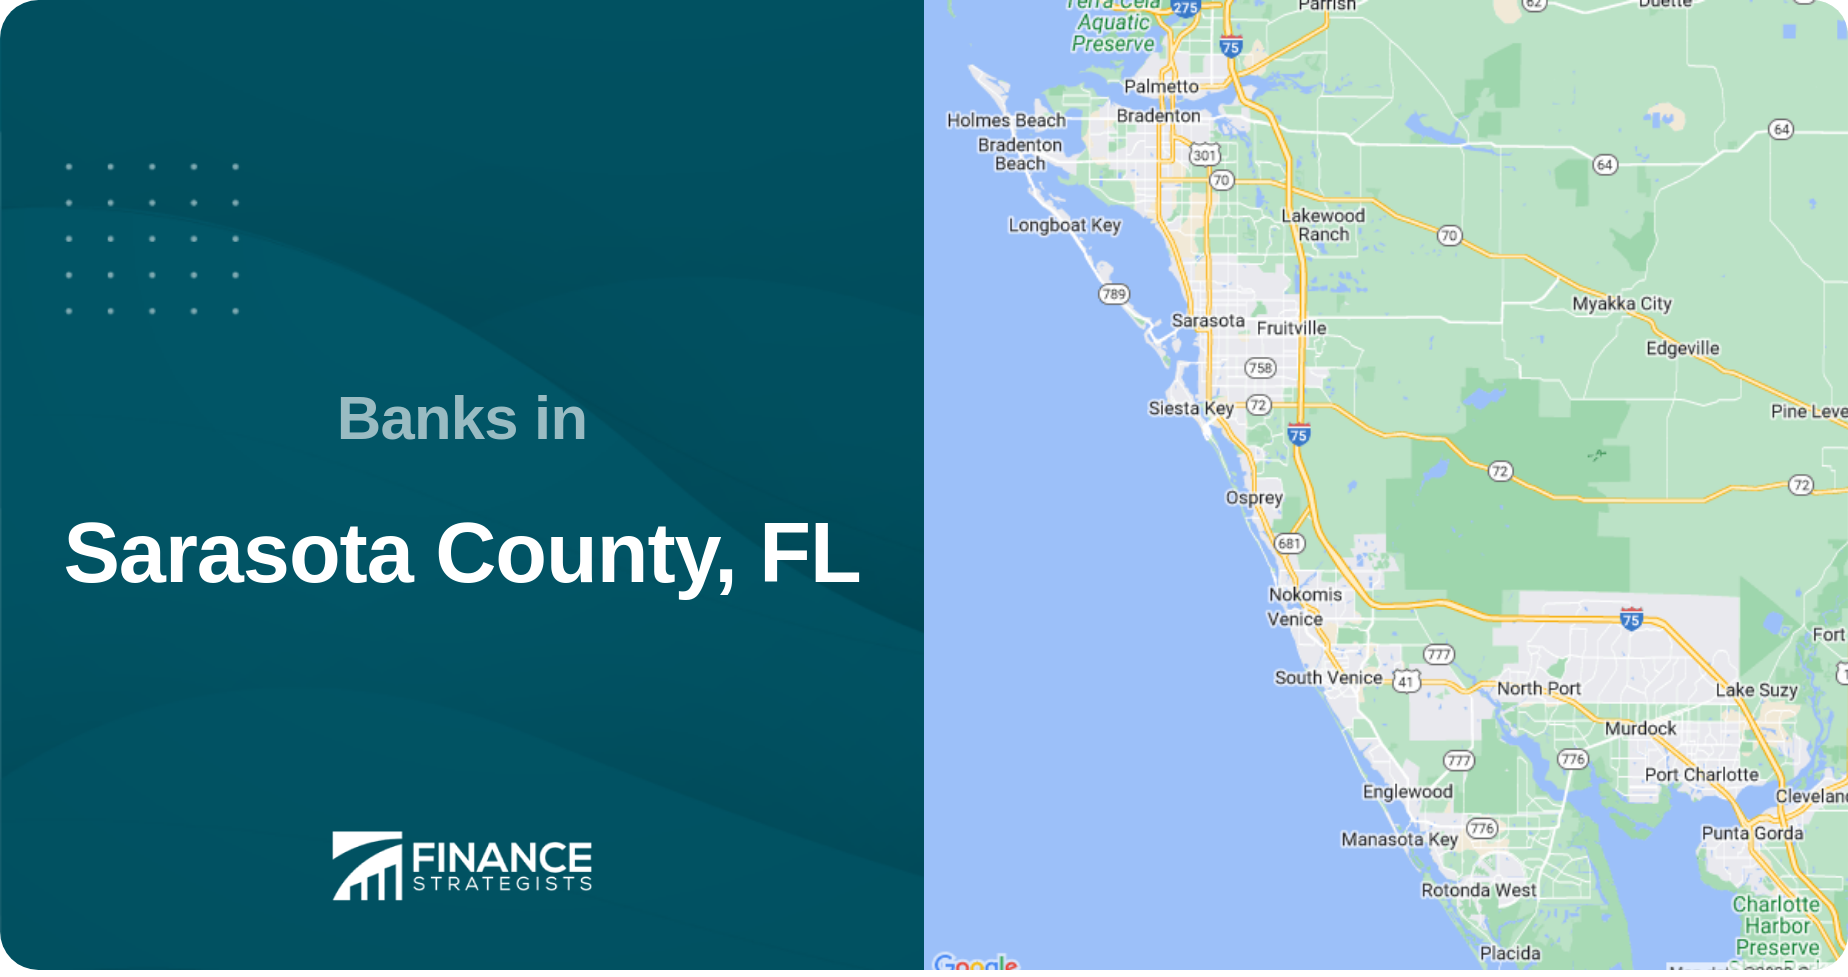 Banks in Sarasota County, FL